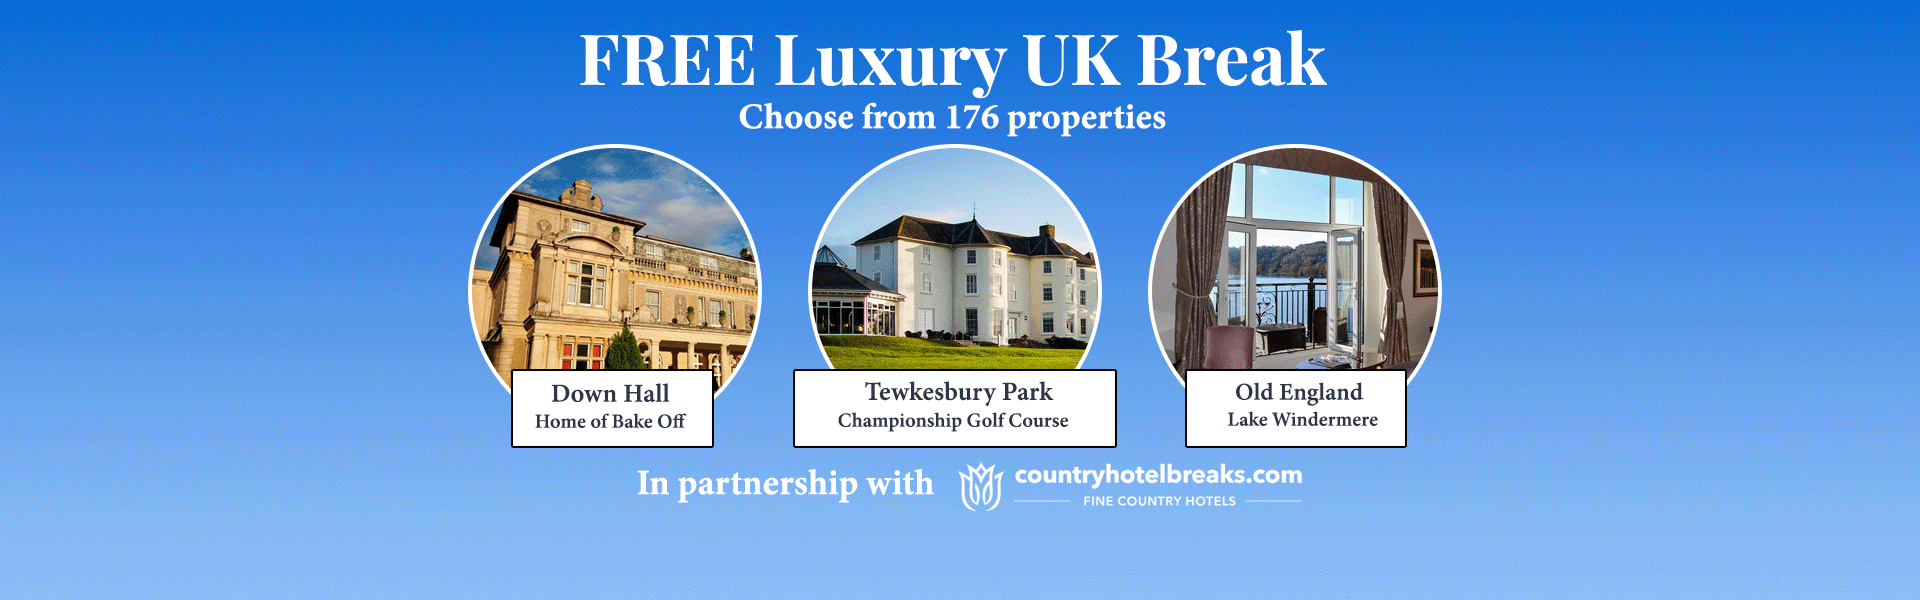 Free Luxury UK Break